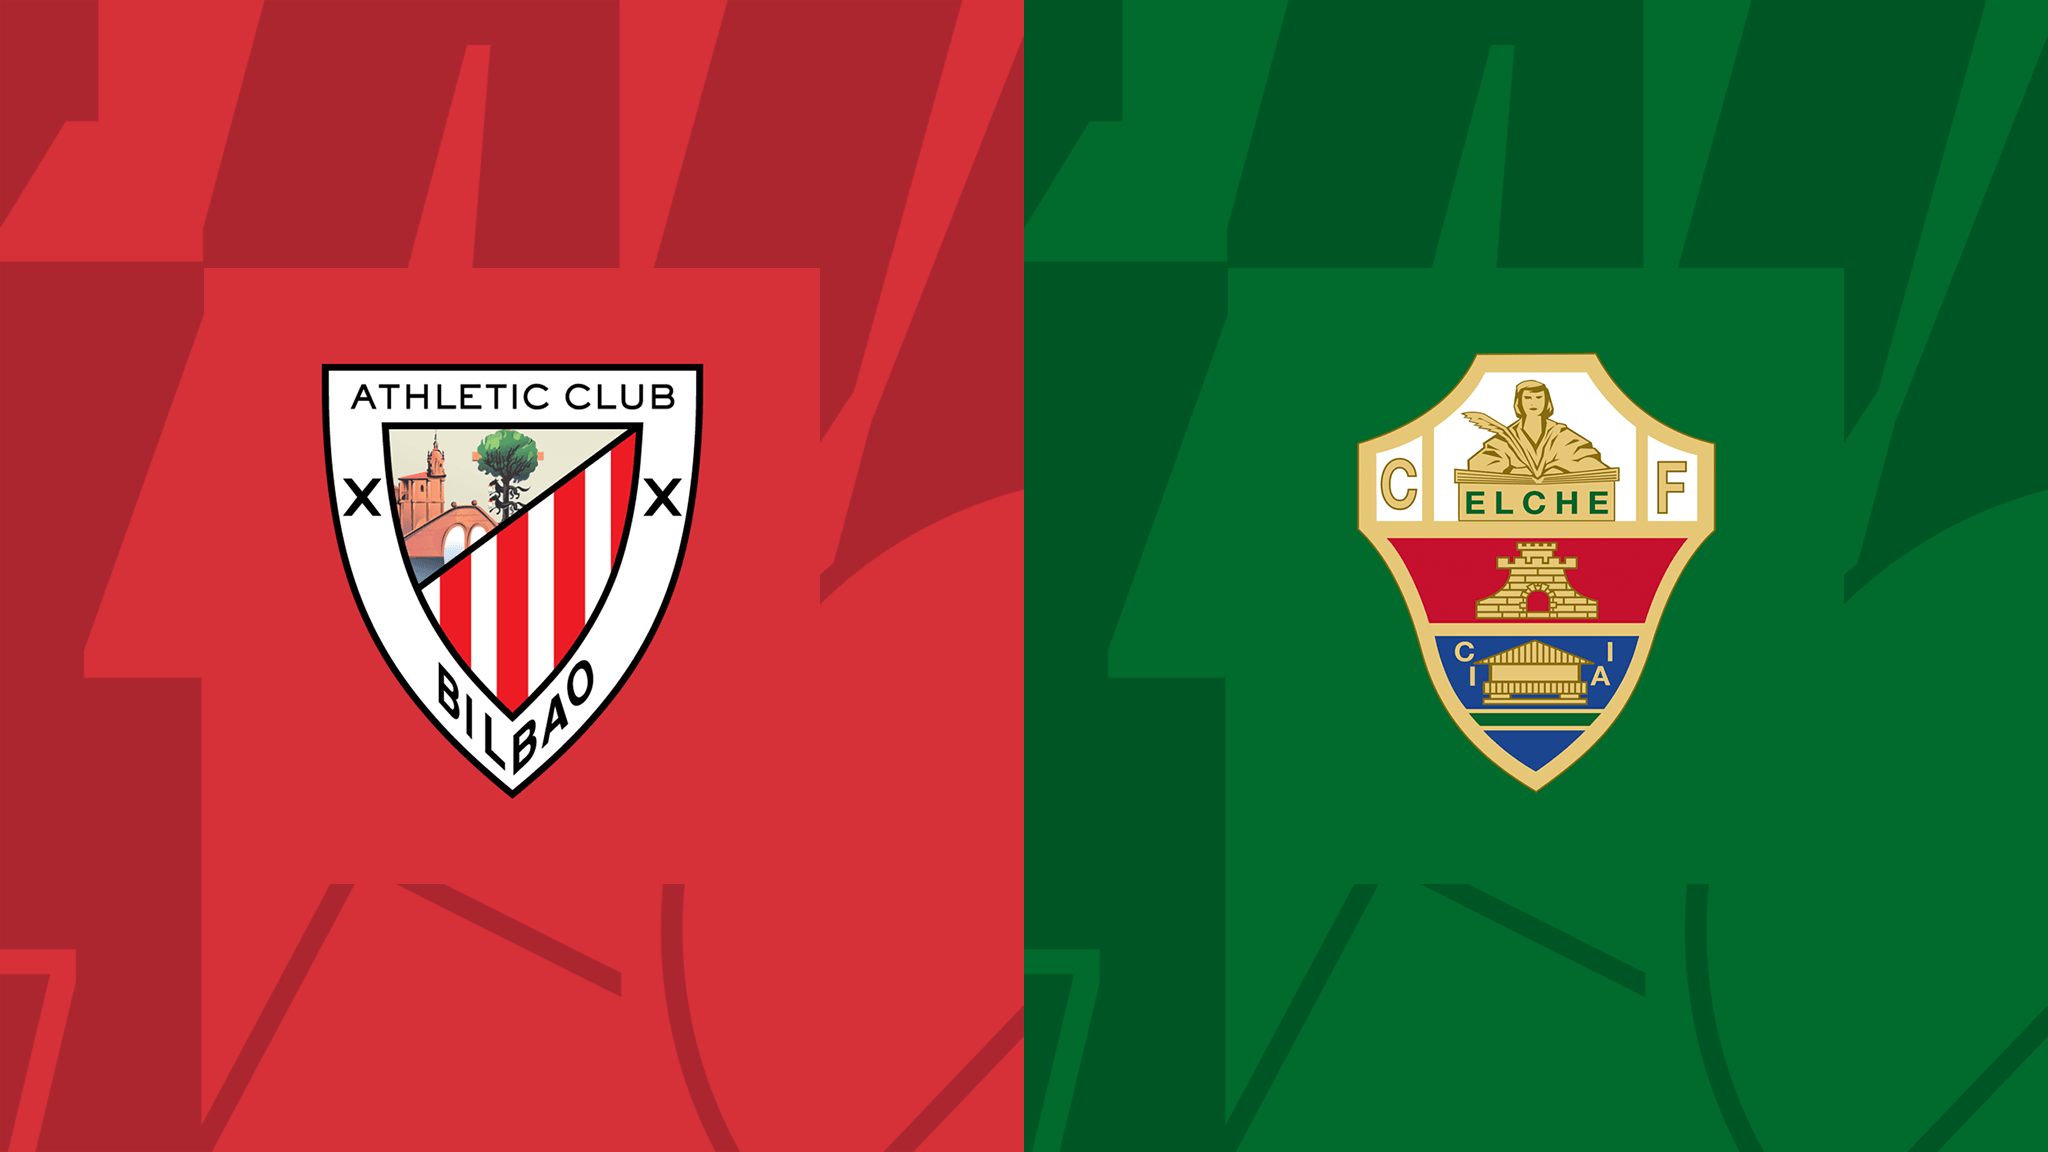 Soi kèo Athletic Bilbao vs Elche